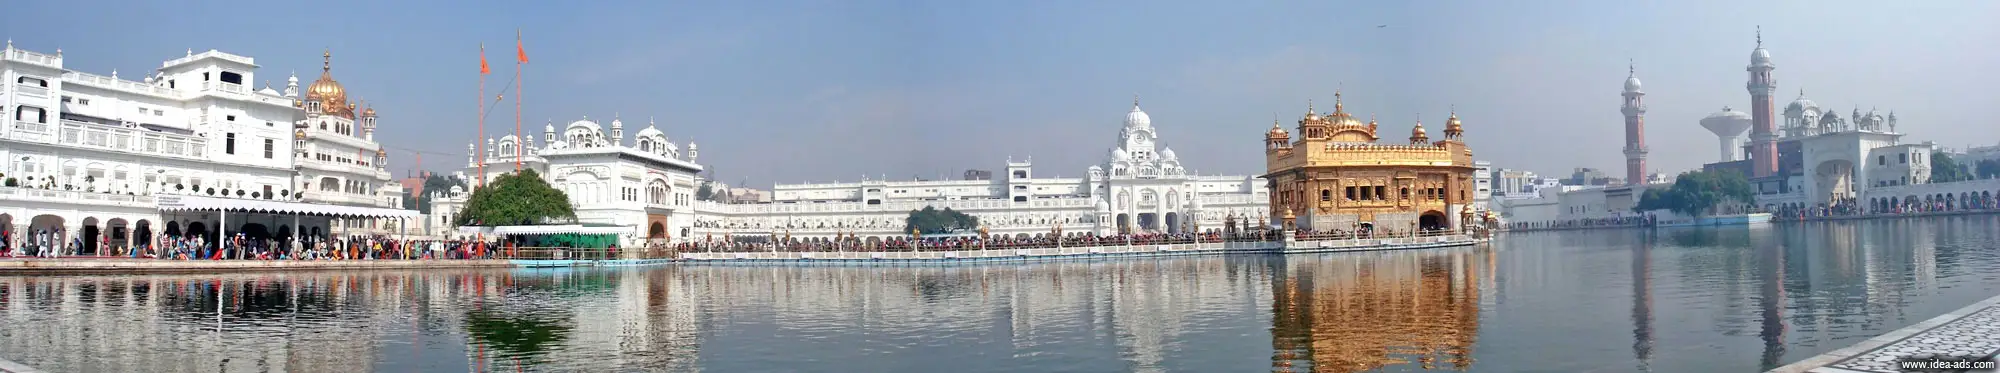 Golden Temple, Amritsar, Sri Darbar Sahib, Darbar Sahib, Hari Mandir, Famous Temples of India